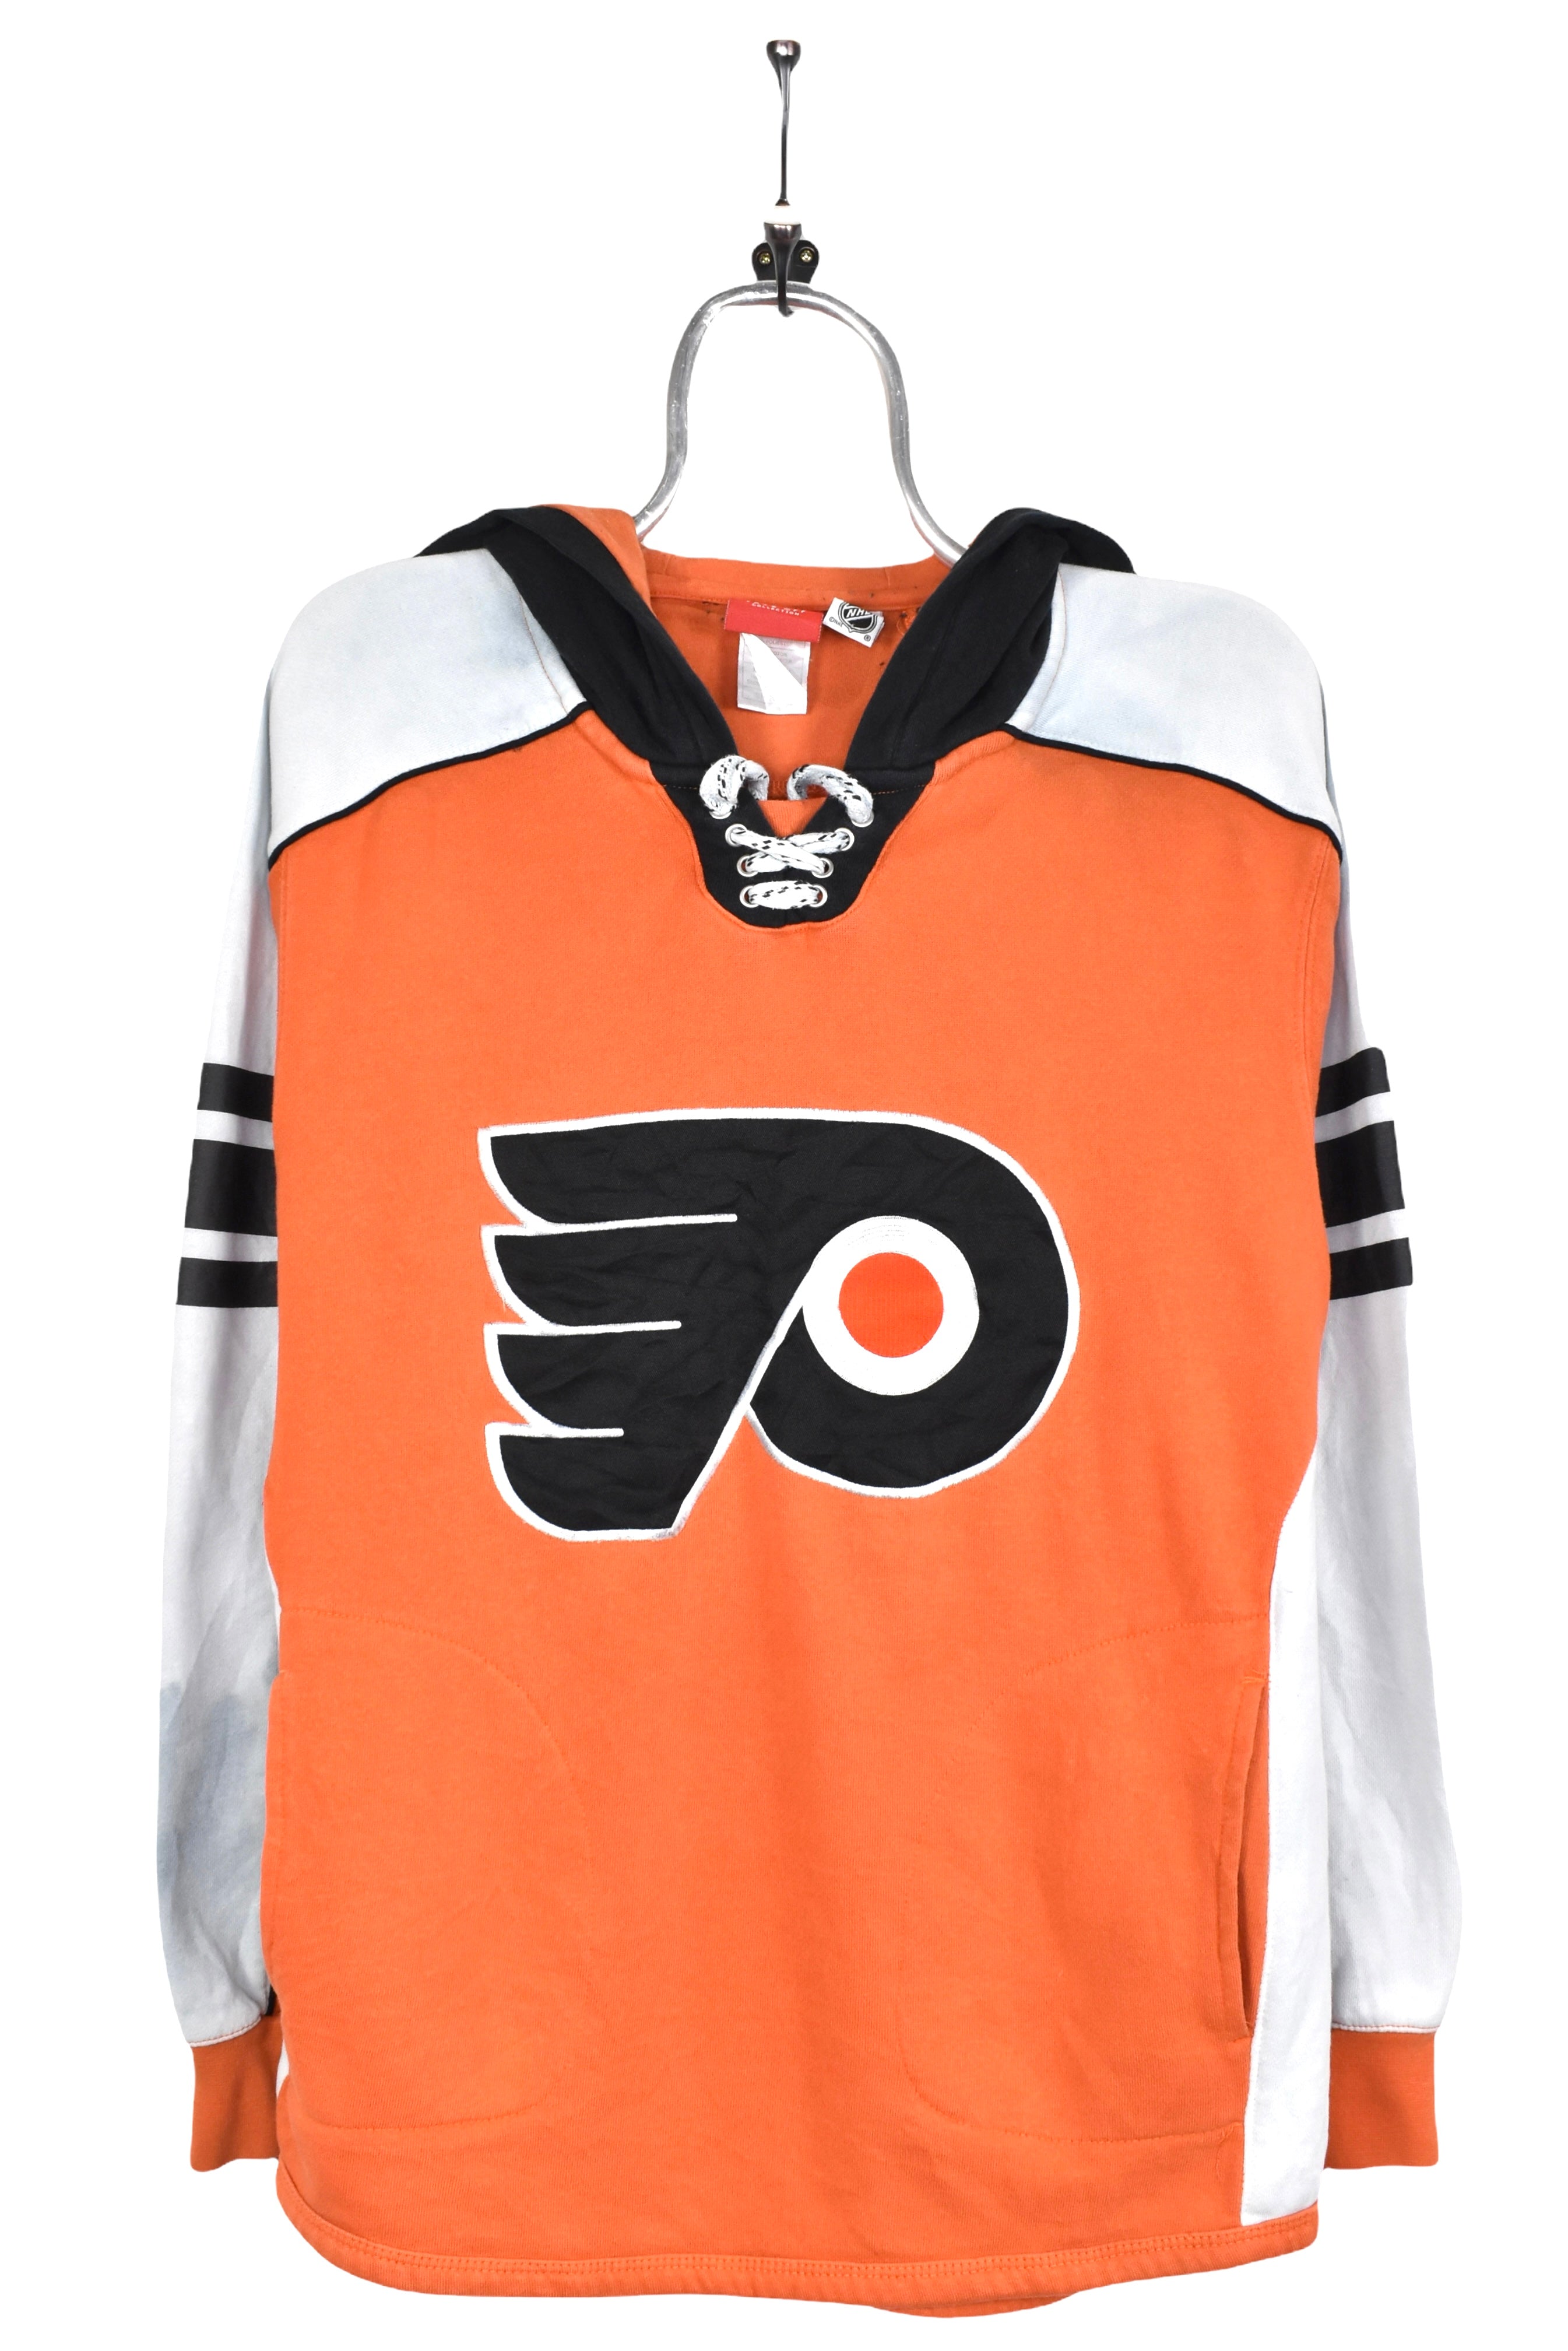 Vintage Philadelphia Flyers hoodie, NHL orange embroidered sweatshirt - AU M